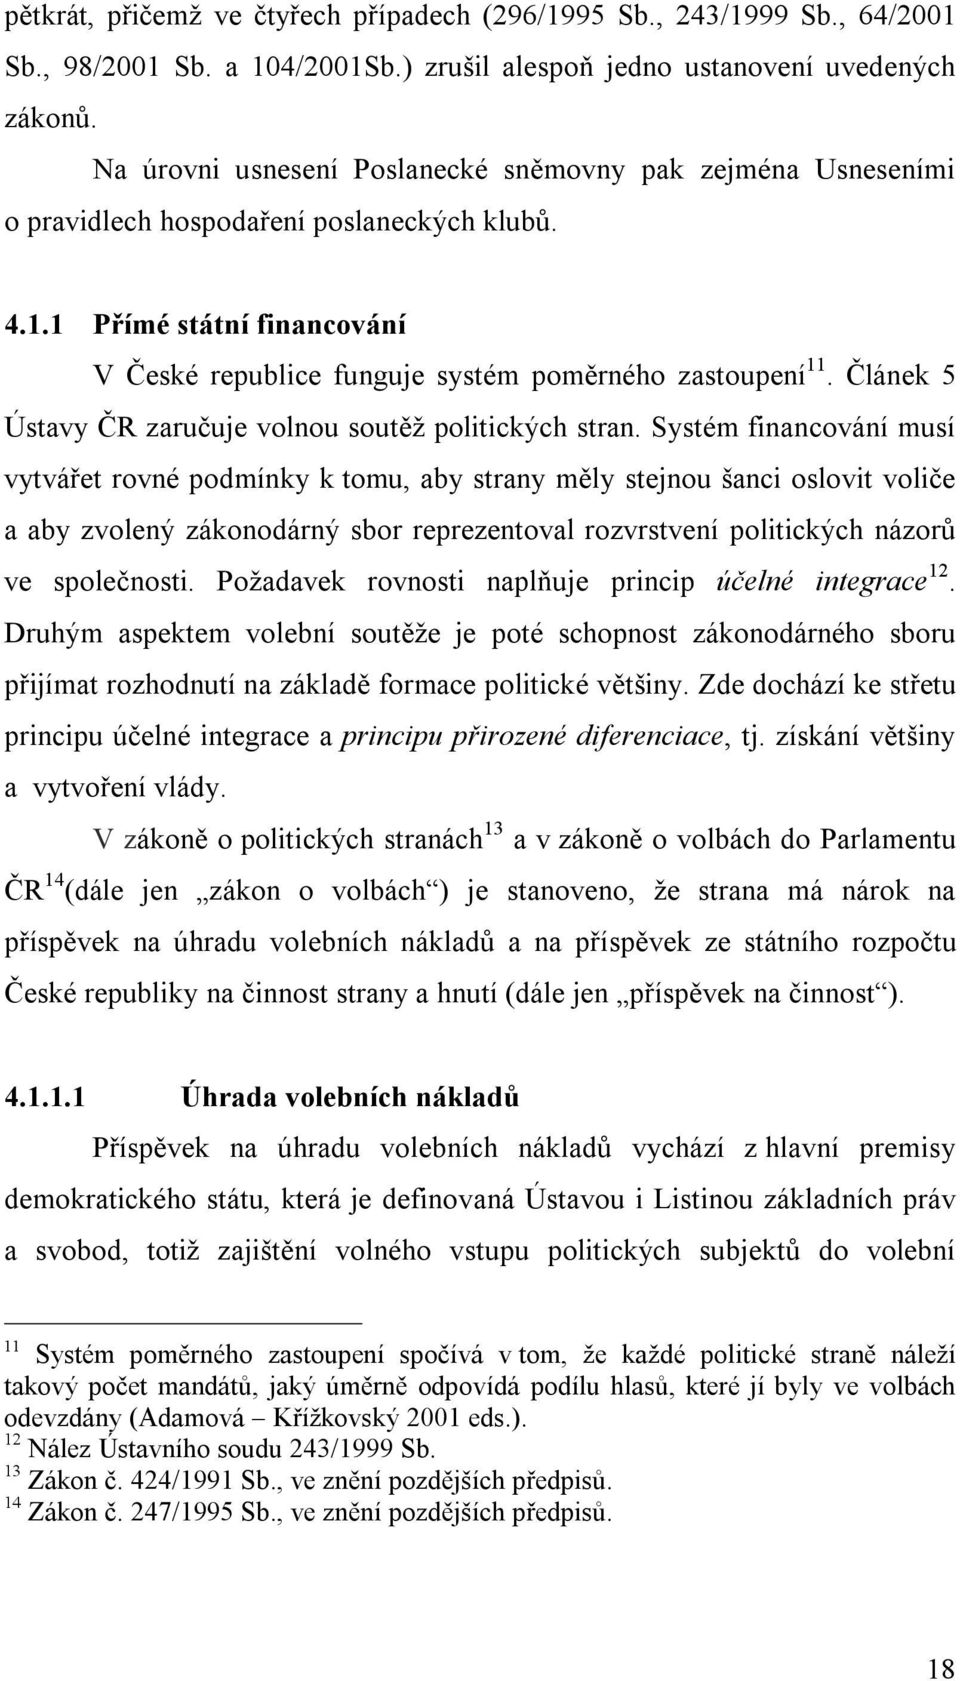 Článek 5 Ústavy ČR zaručuje volnou soutěž politických stran.